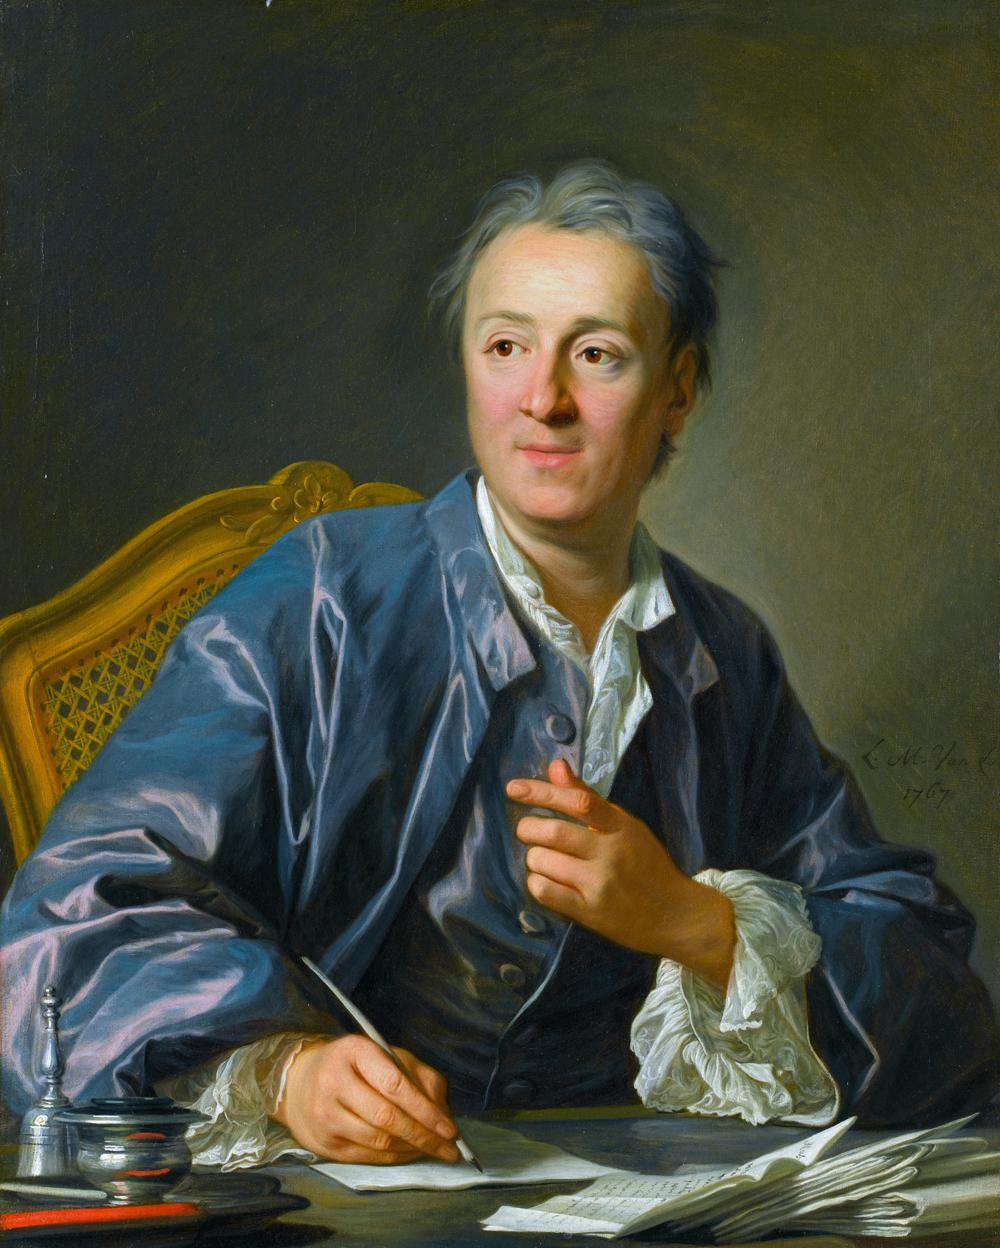 Portrait painting of Denis Diderot by Louis-Michel van Loo